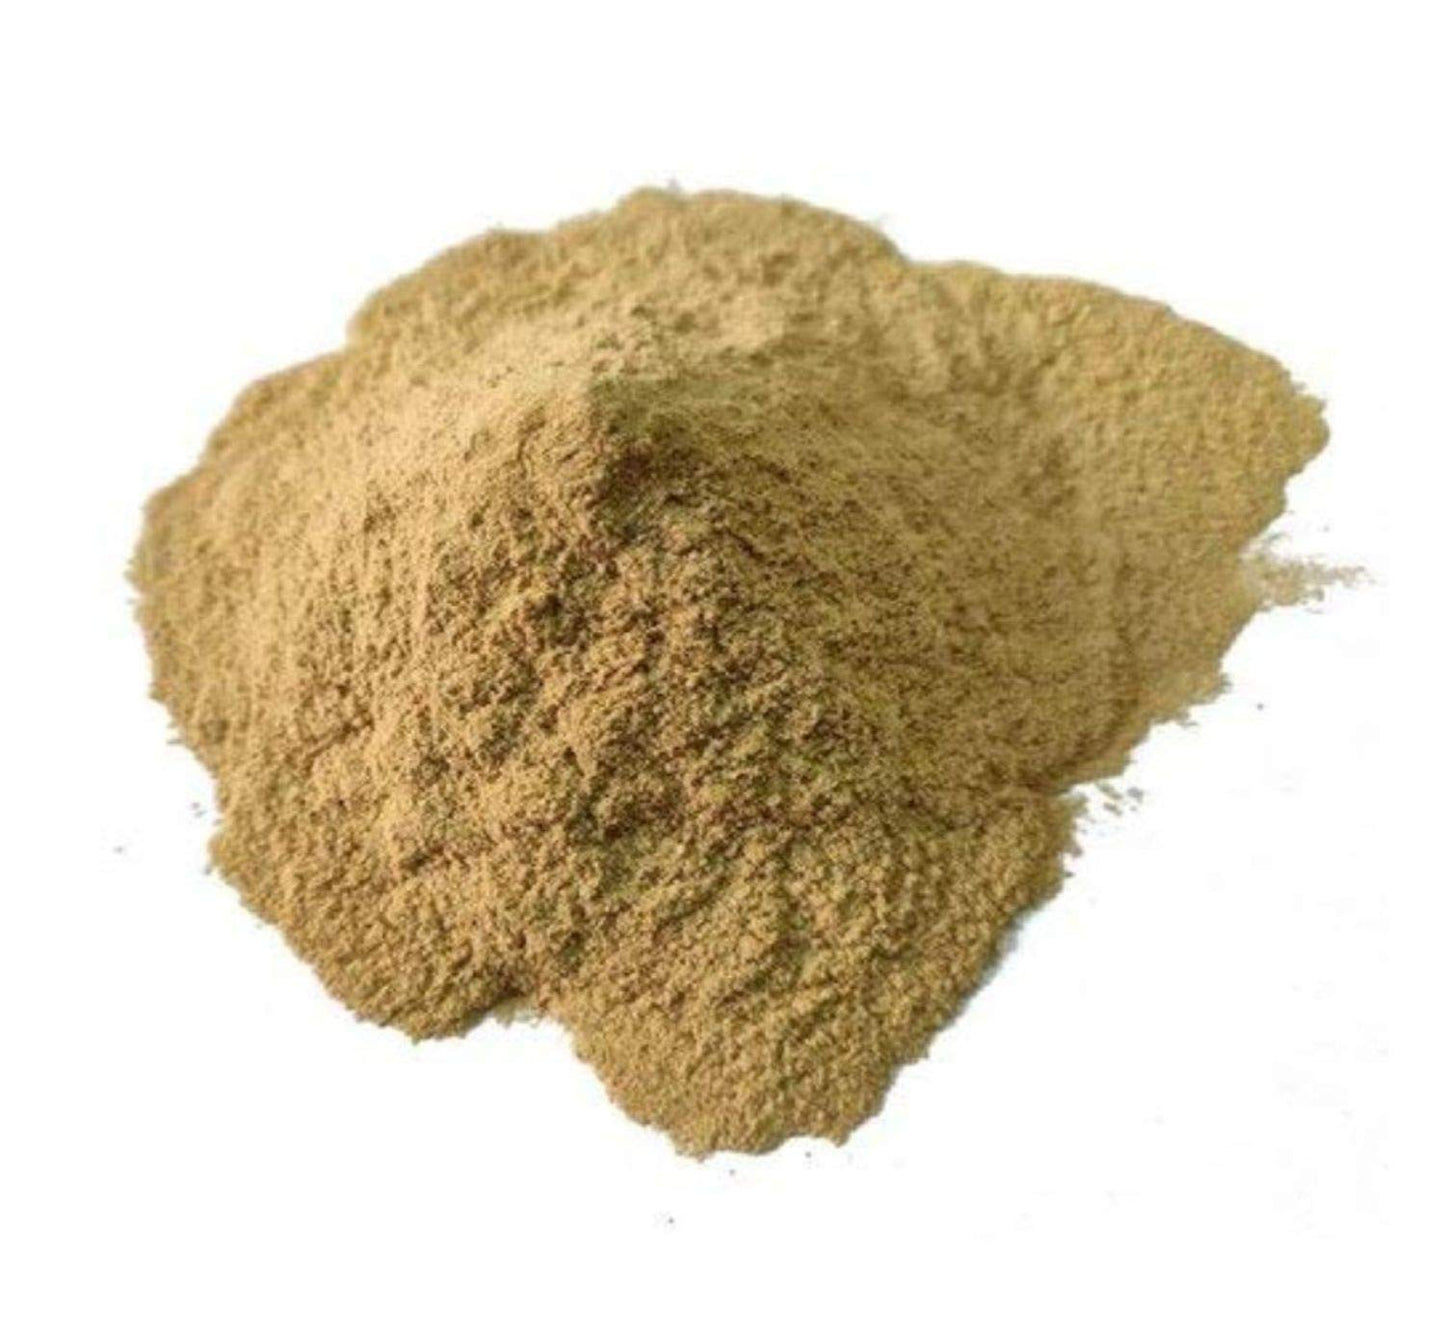 Kachri / Kachari Powder